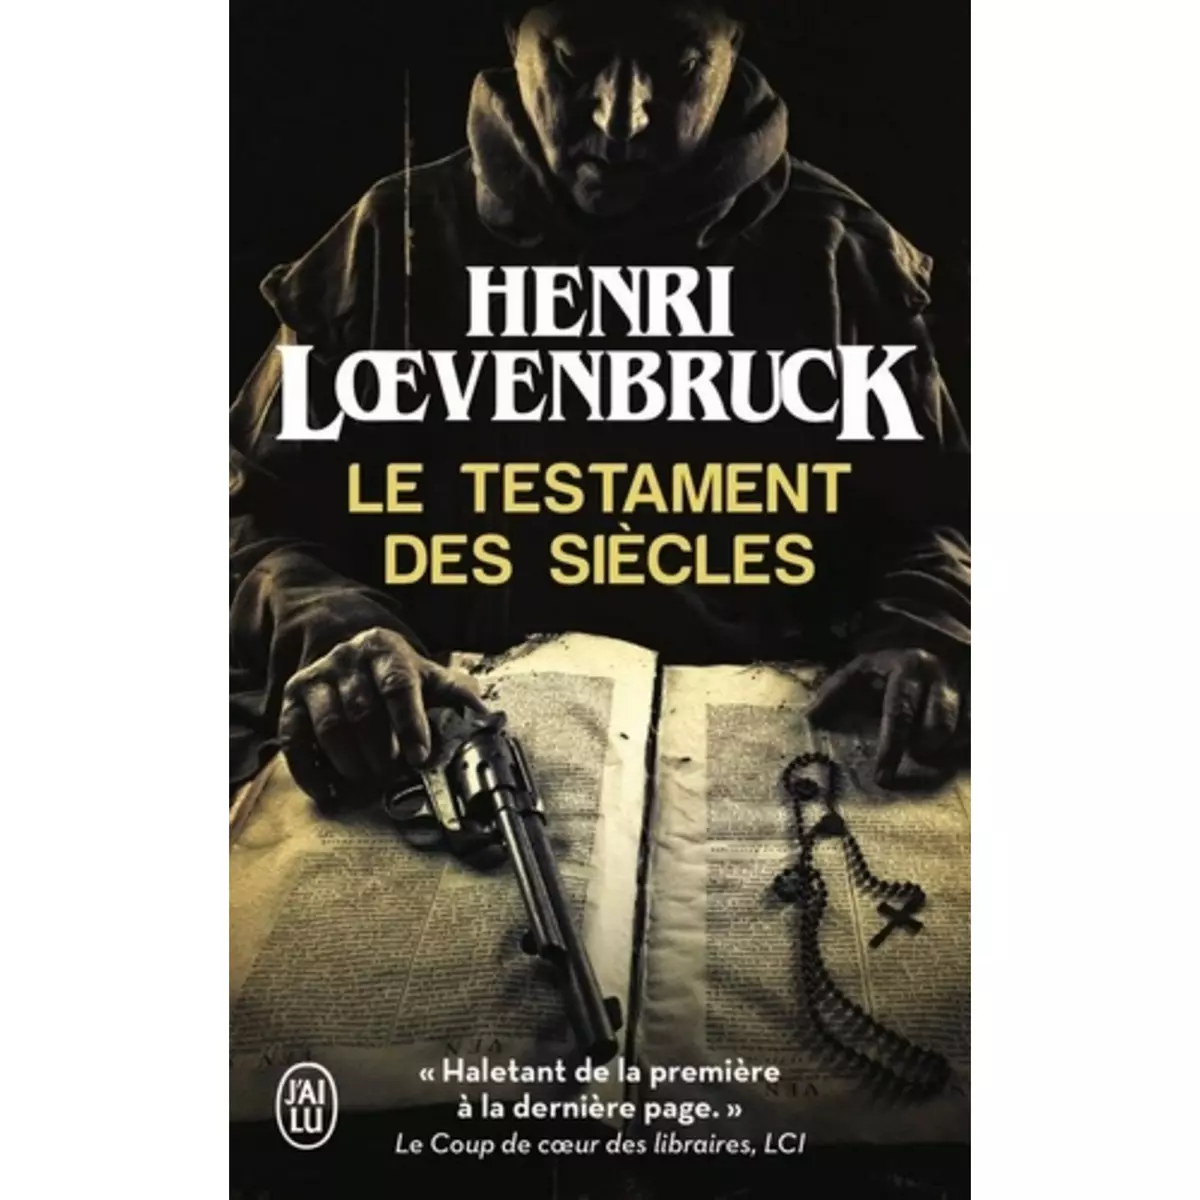  LE TESTAMENT DES SIECLES, Loevenbruck Henri